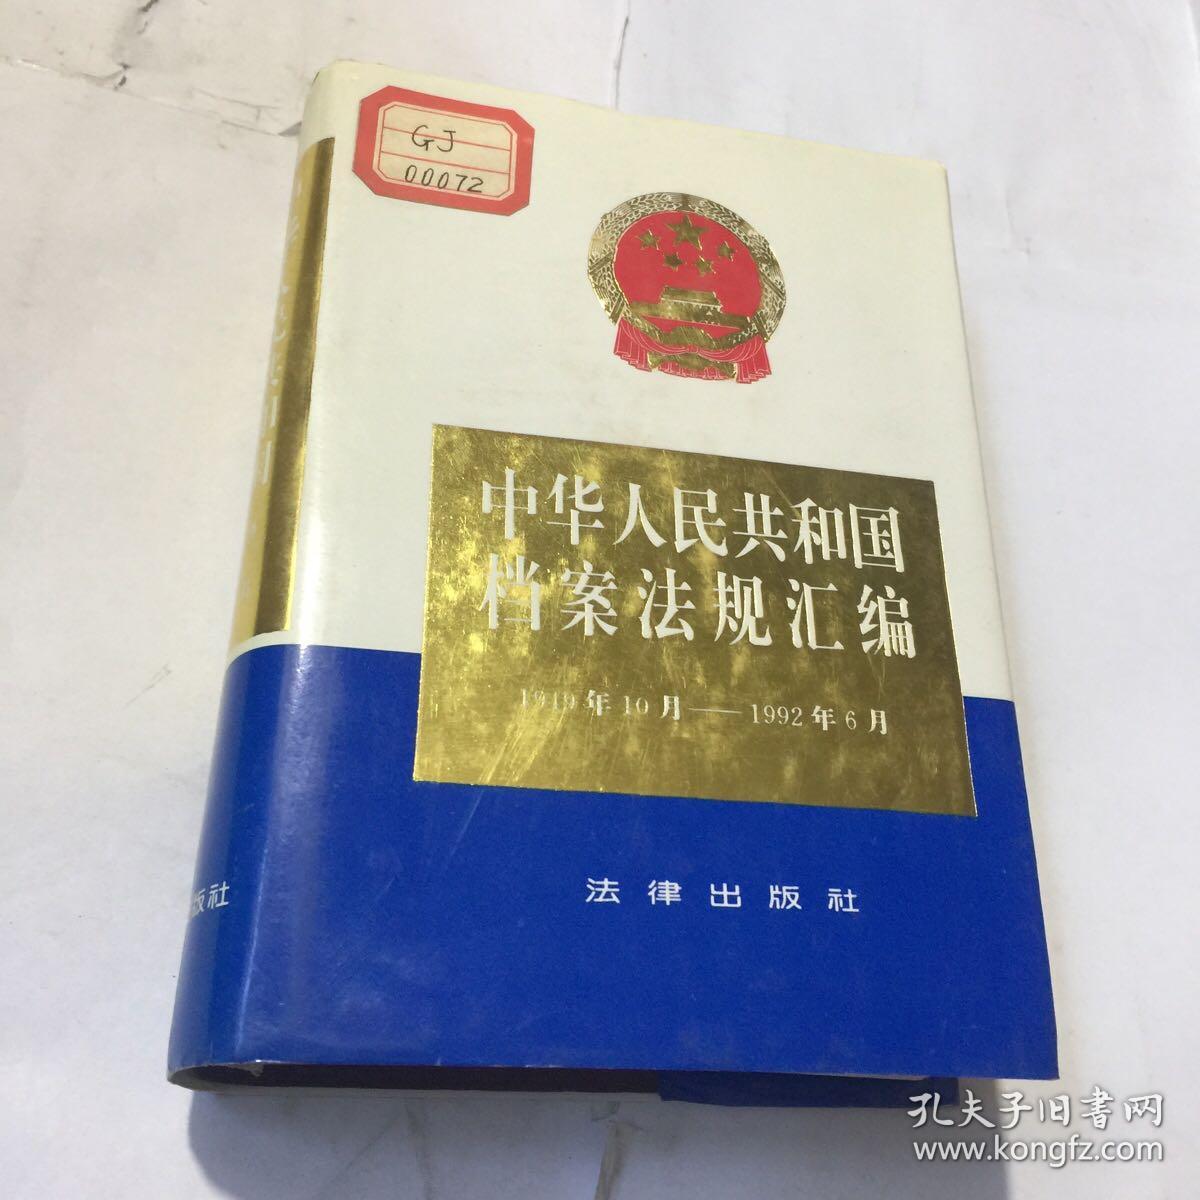 中华人民共和国档案法规汇编1949年10月–1992年6月